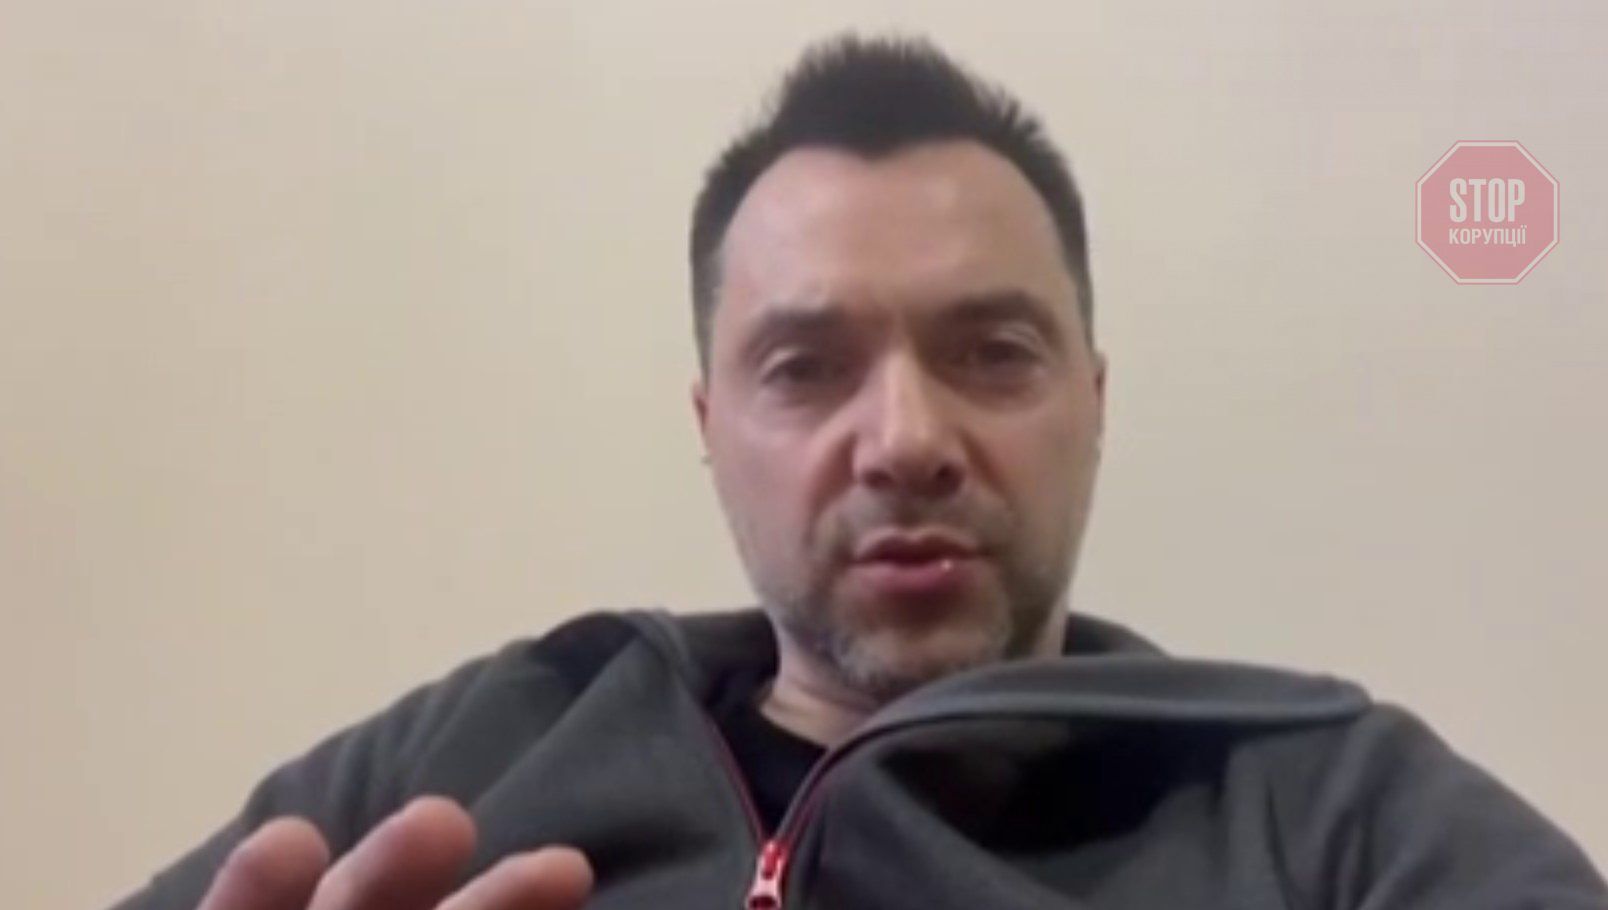  Олексій Арестович пояснює ситуацію з Маріуполем у короткому відео